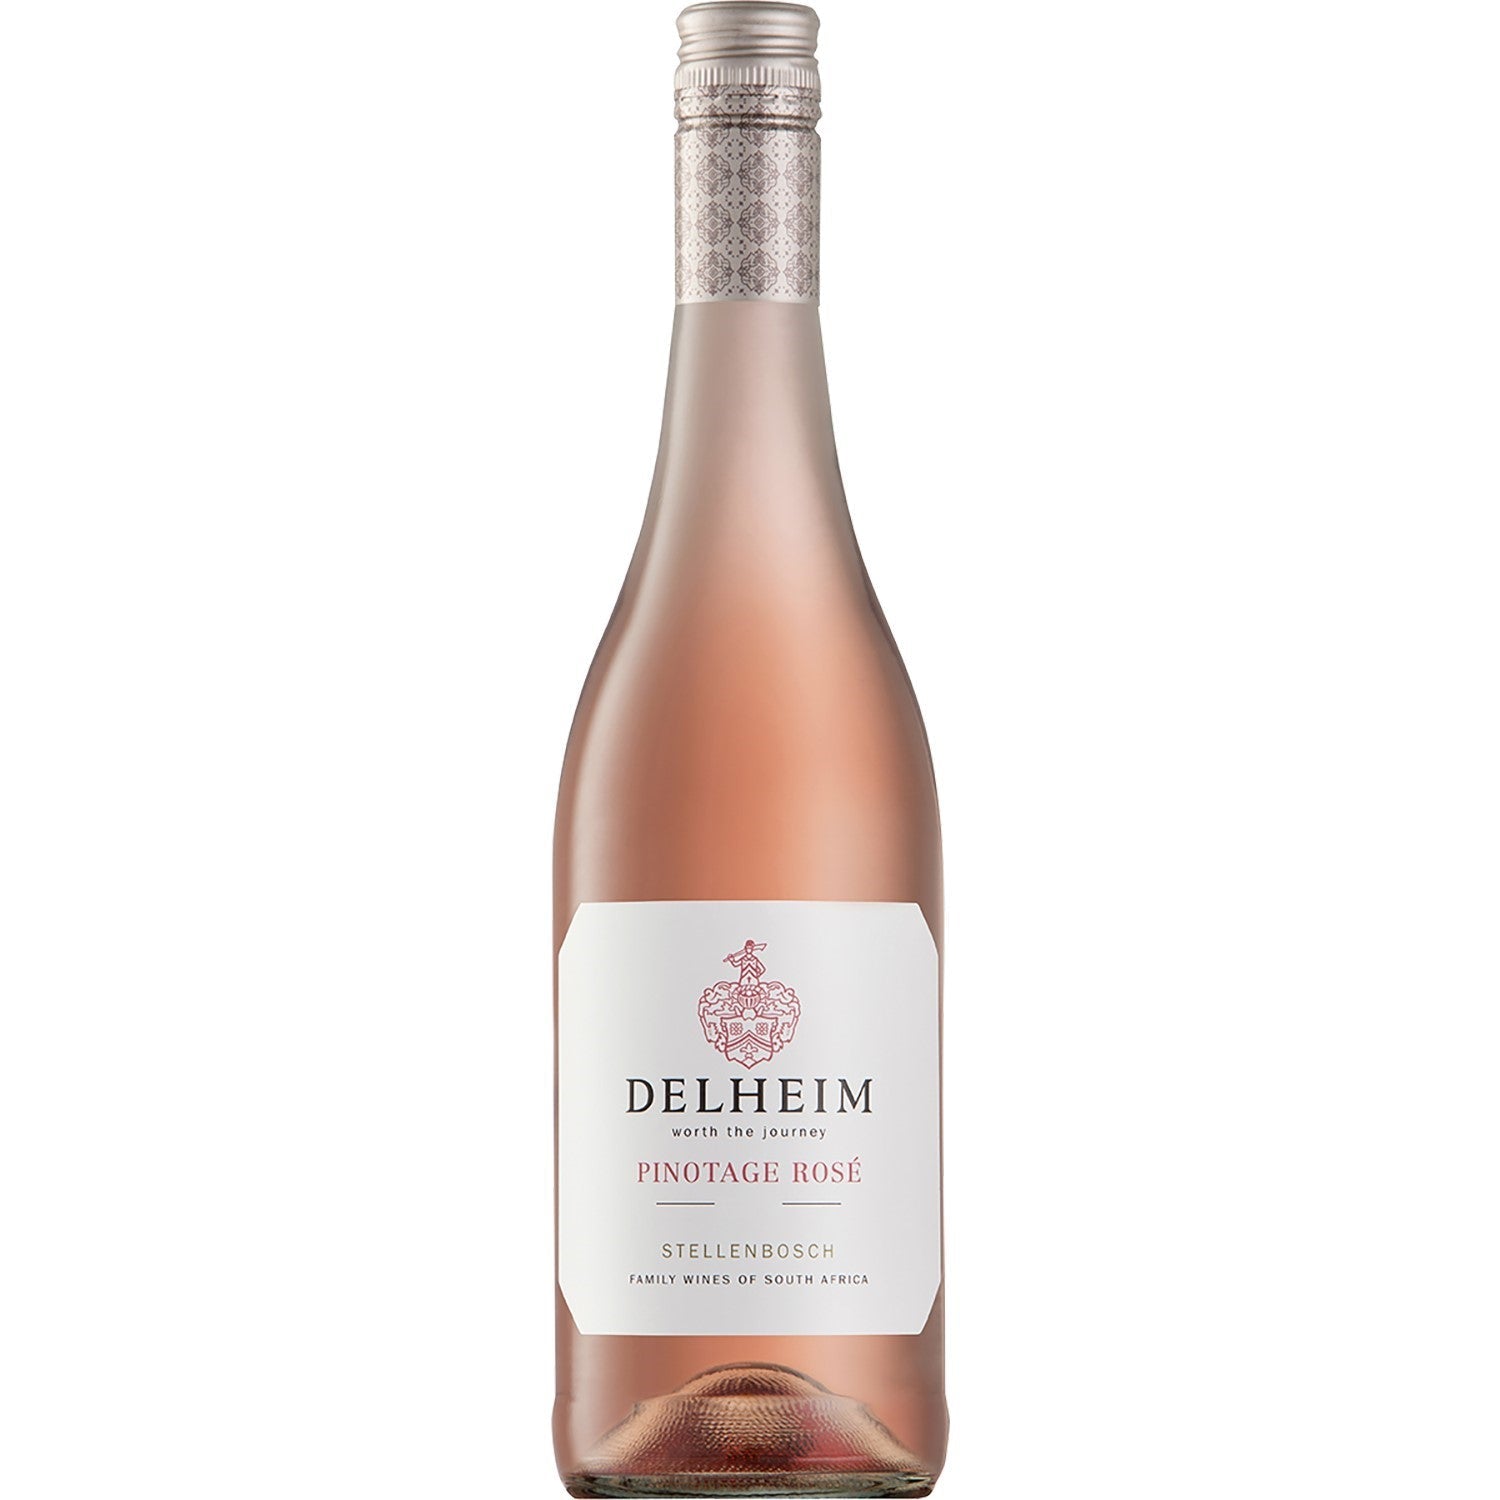 Delheim Pinotage Rosé Coastal Region Roséwein Wein trocken Südafrika (6 x 1.5l) - Versanel -